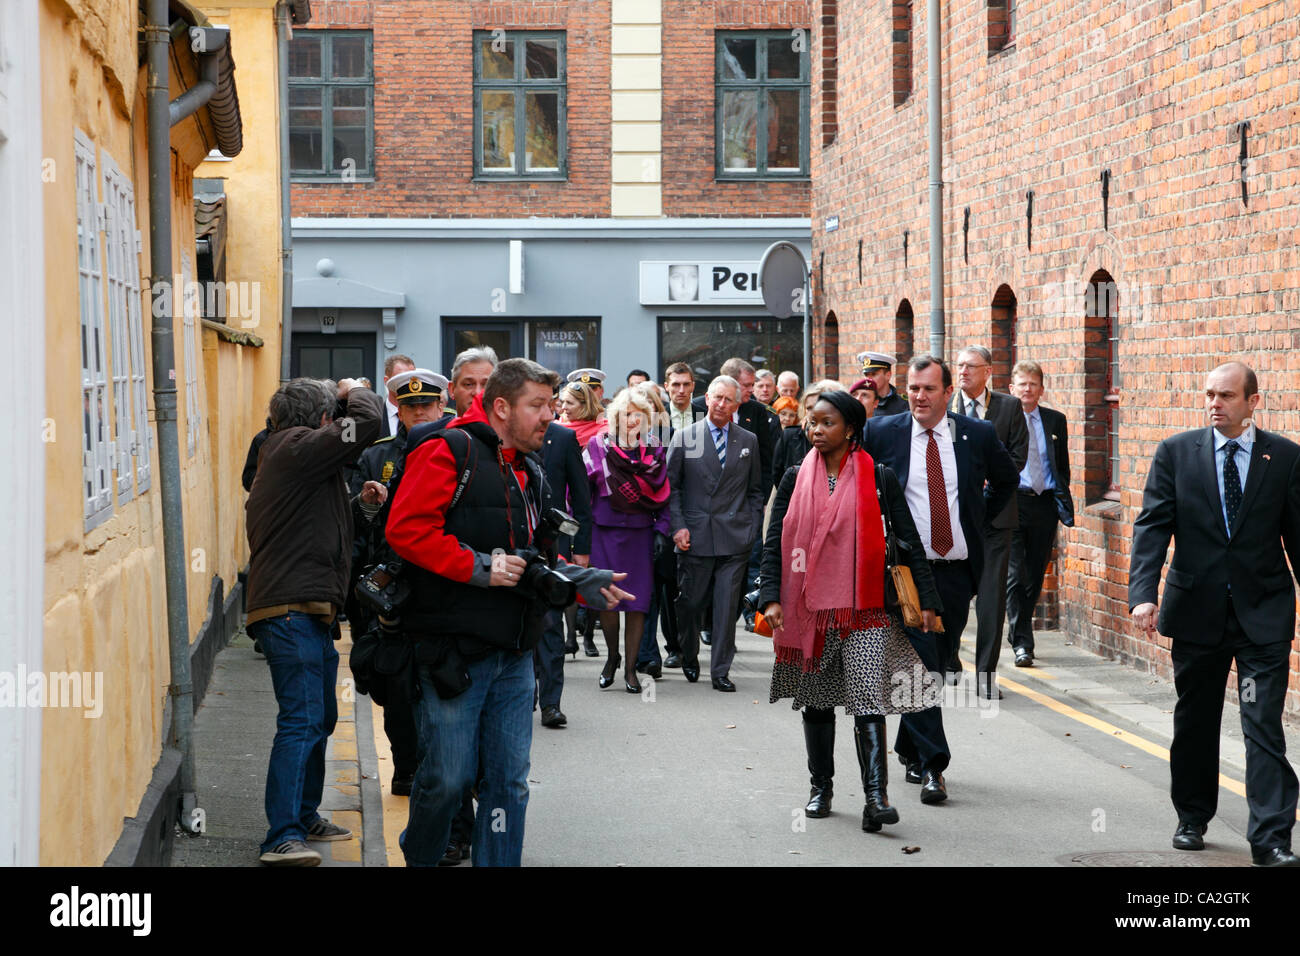 März Montag 26, 2012 – Helsingør, Dänemark. Prinz Charles und der Duchess of Cornwall auf offiziellem Besuch in Dänemark. Hier auf ihrem Weg durch die historischen Straßen der Elsinore, das ehemalige Karmeliterkloster und Kirche St. Mariae. Stockfoto